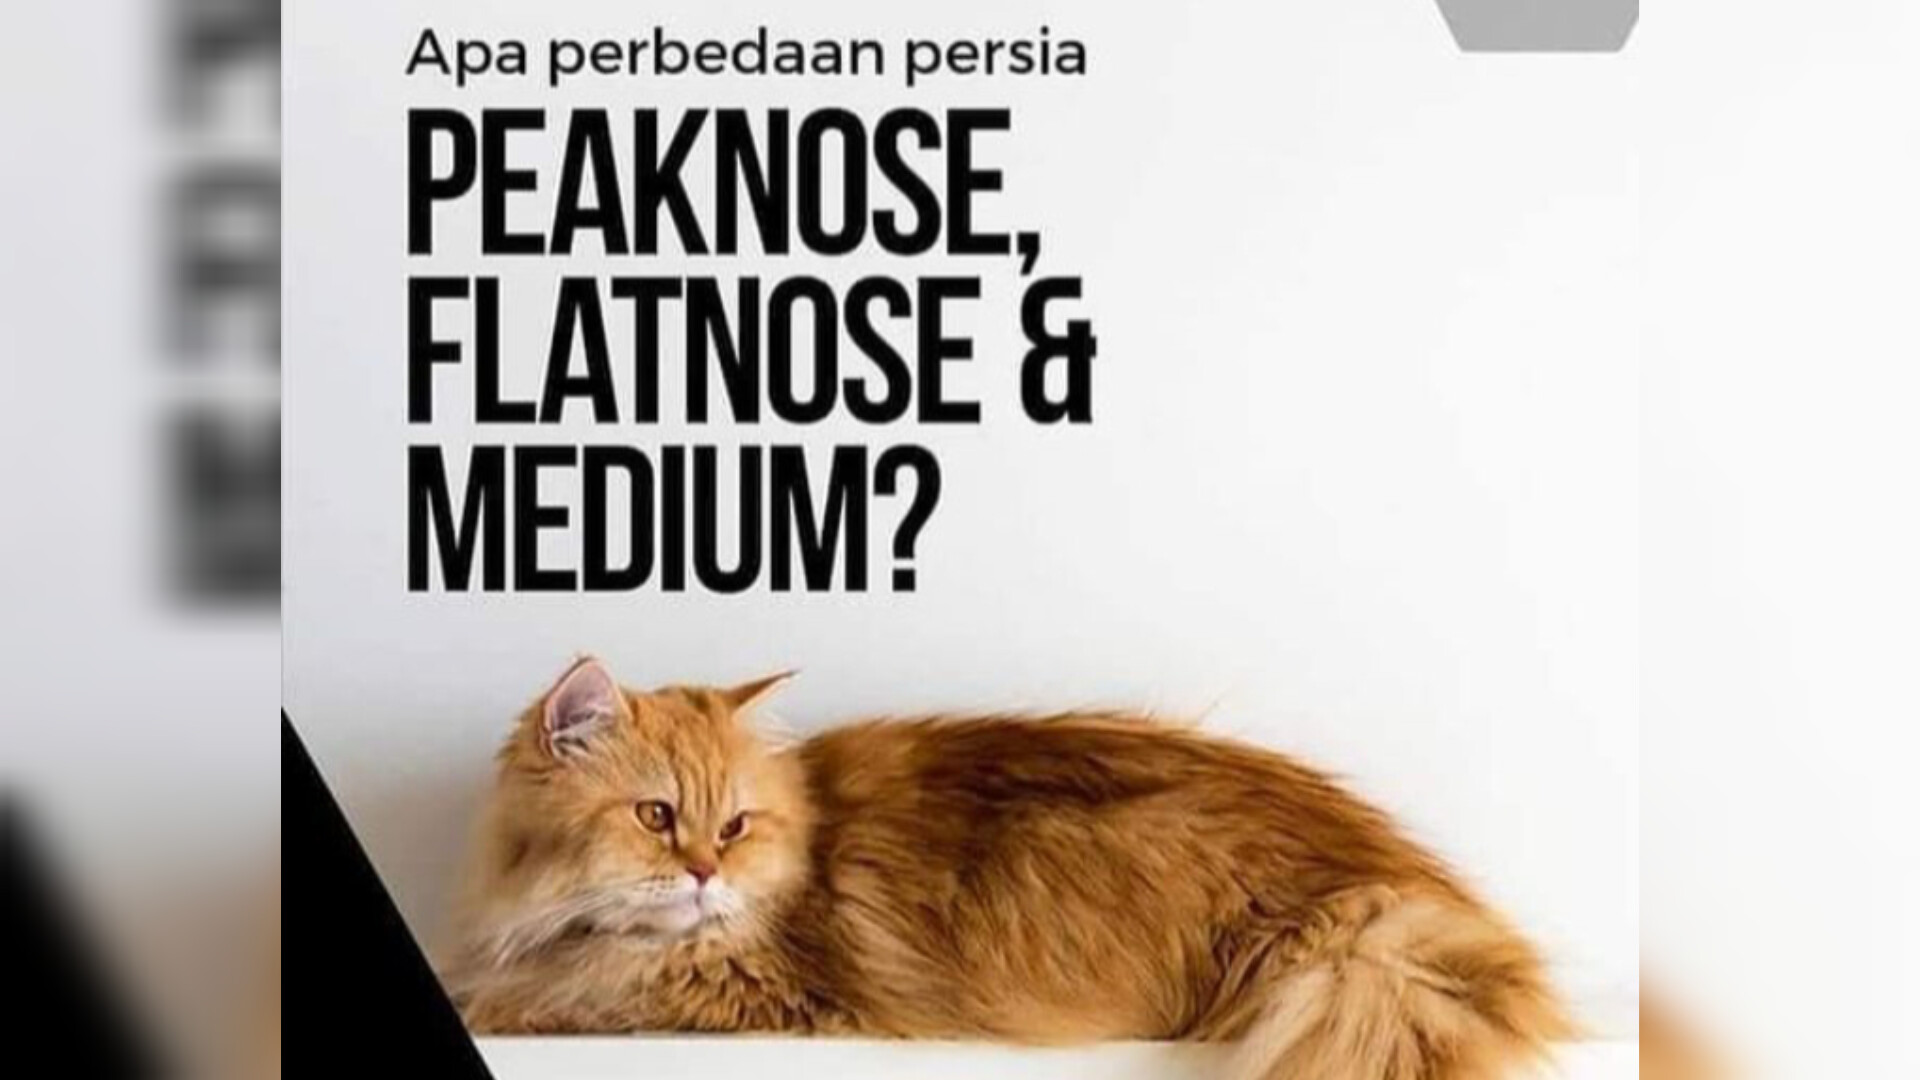 Sudah Tahu Belum? Ini Perbedaan Kucing Persia Medium, Flatnose, dan Peaknose